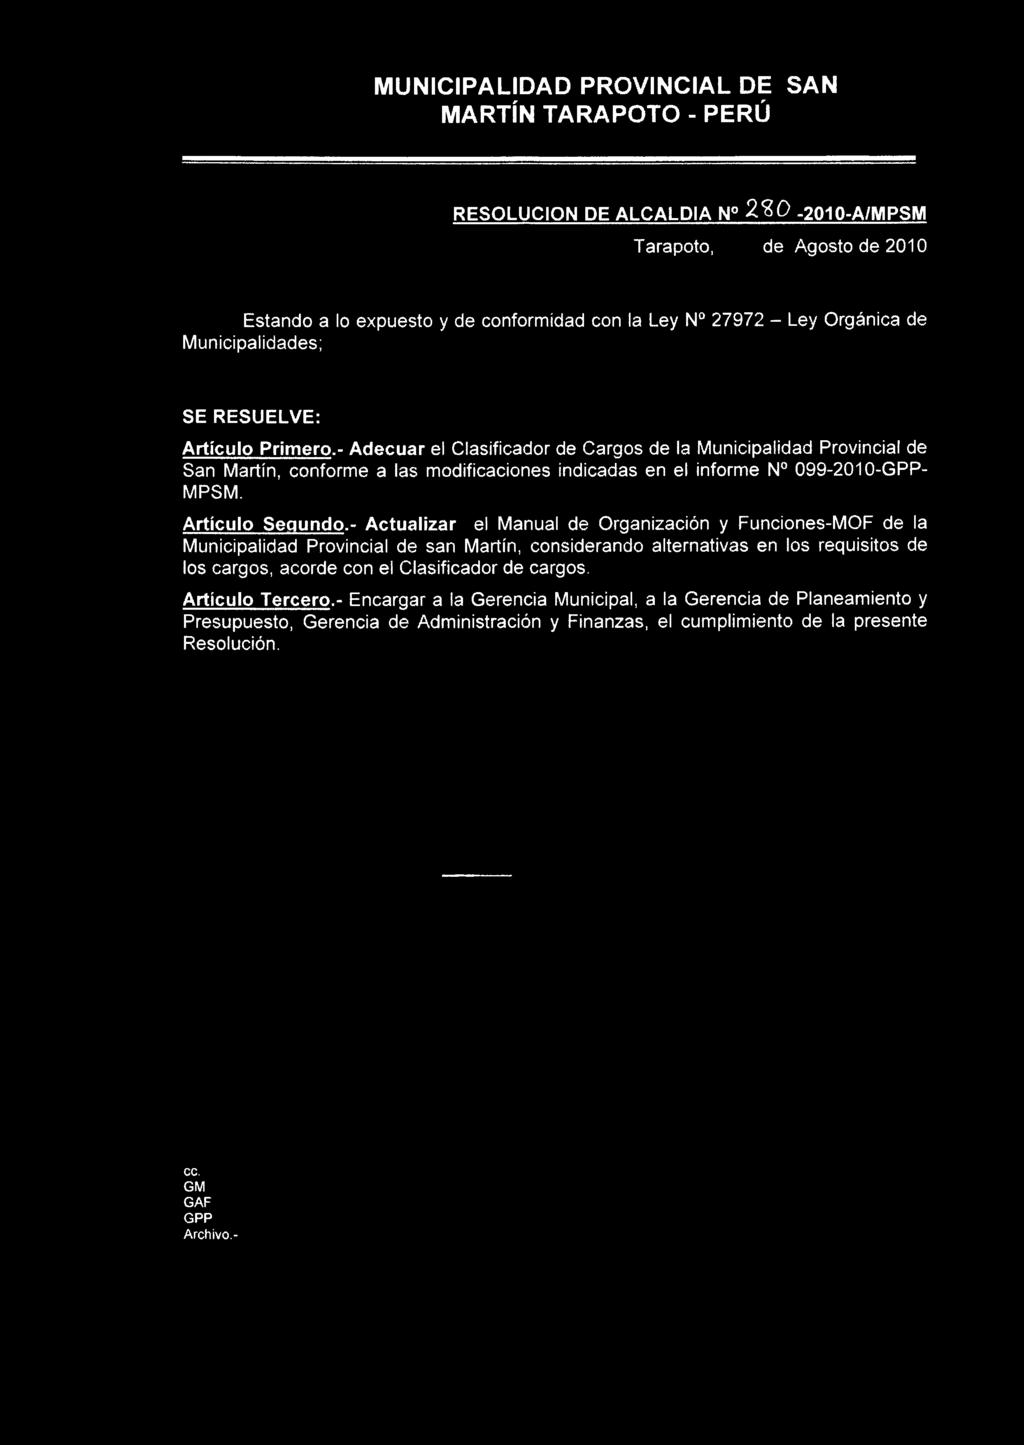 - Adecuar el Clasificador de Cargos de la Municipalidad Provincial de San Martín, conforme a las modificaciones indicadas en el informe N 099-2010-GPP- MPSM. Artículo Segundo.